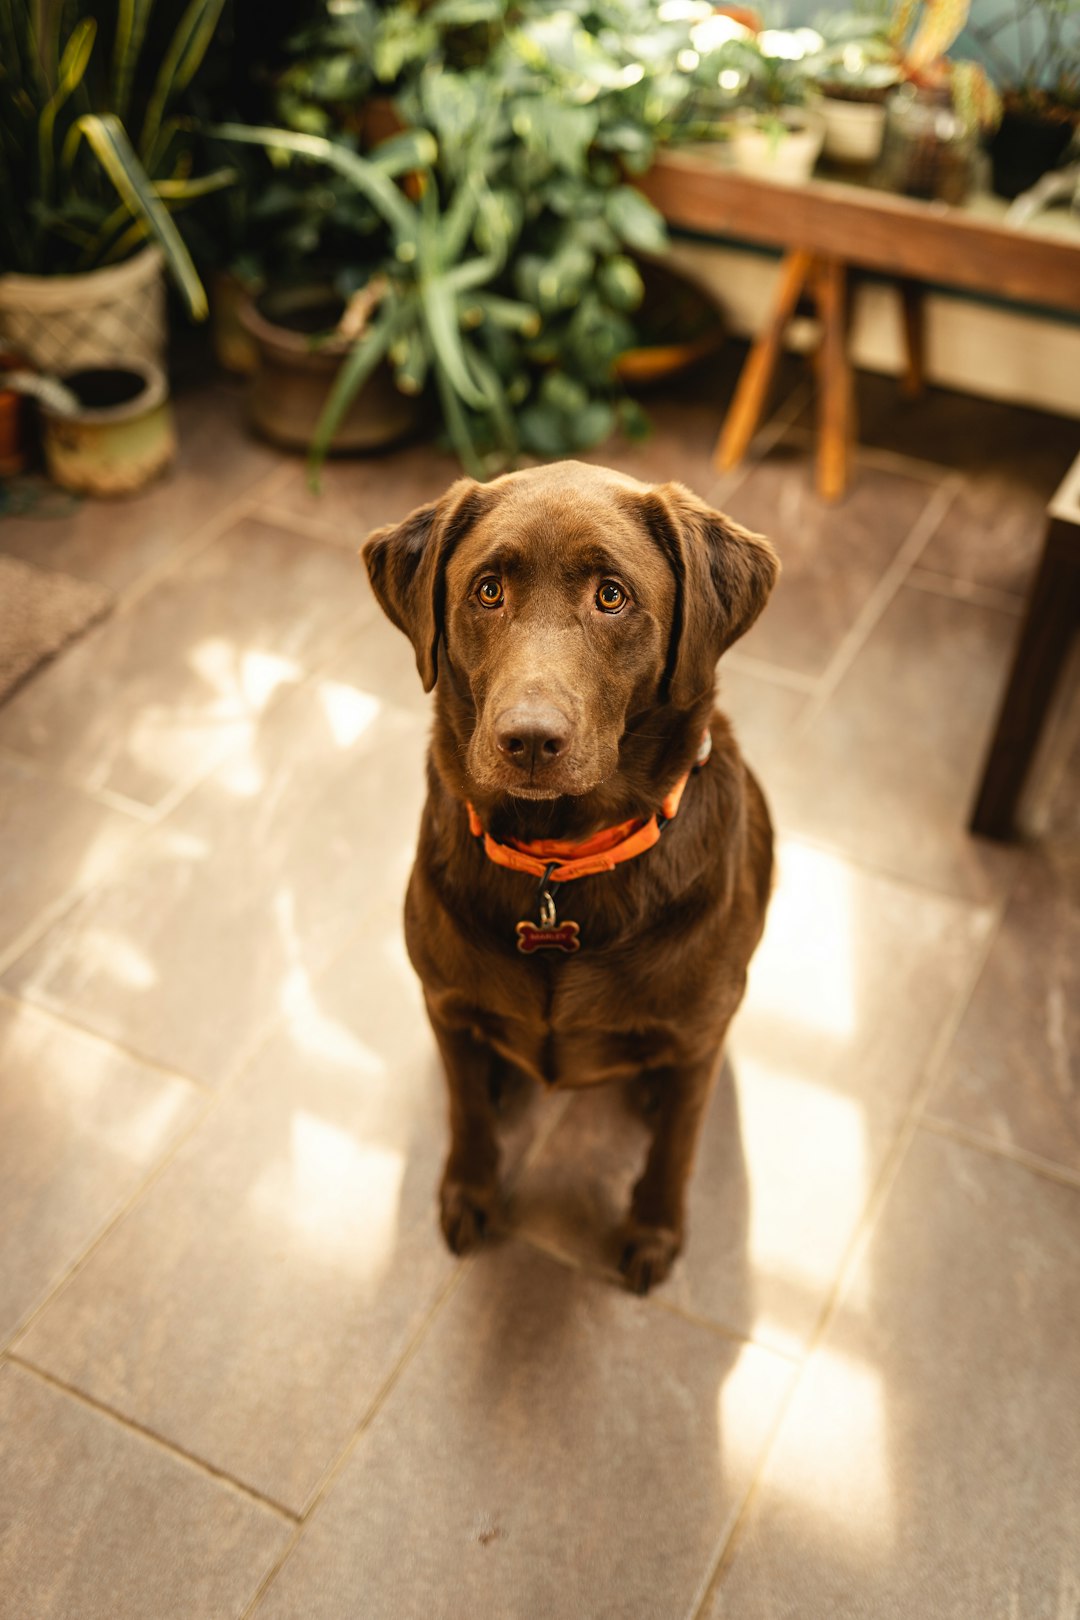 brown short coated dog sitting on white floor tiles